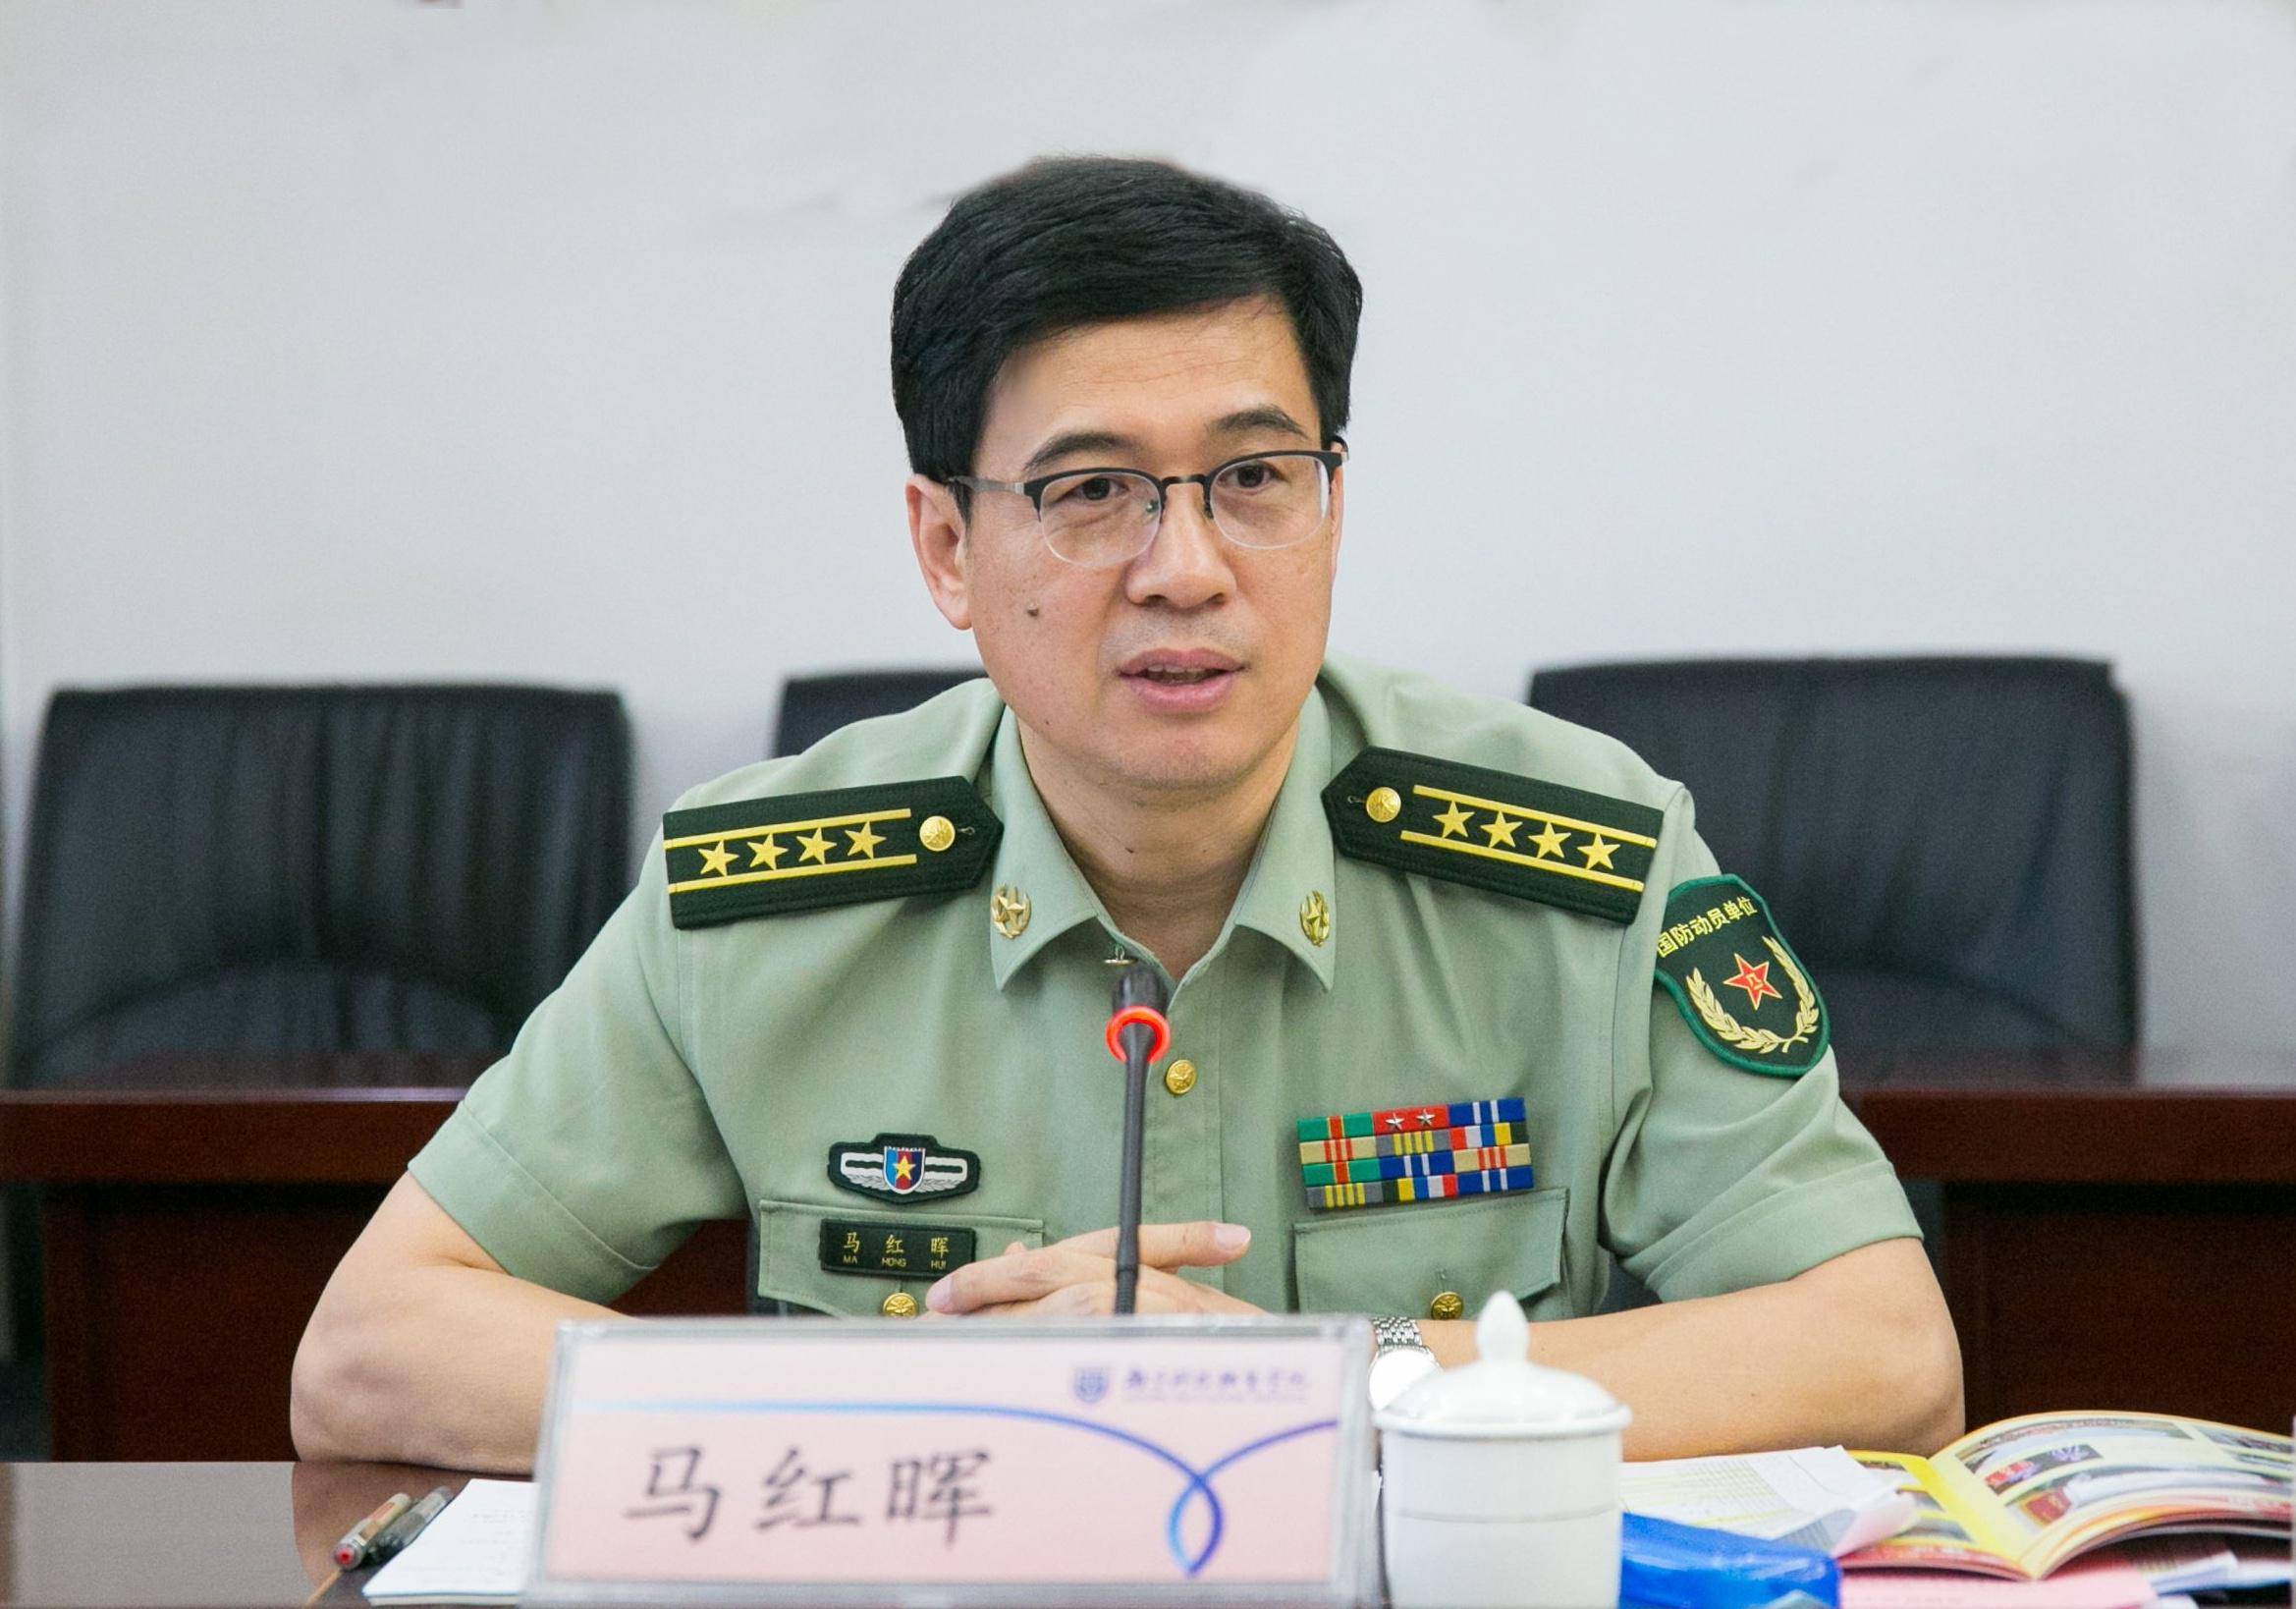 北京军区臂章高清图片图片